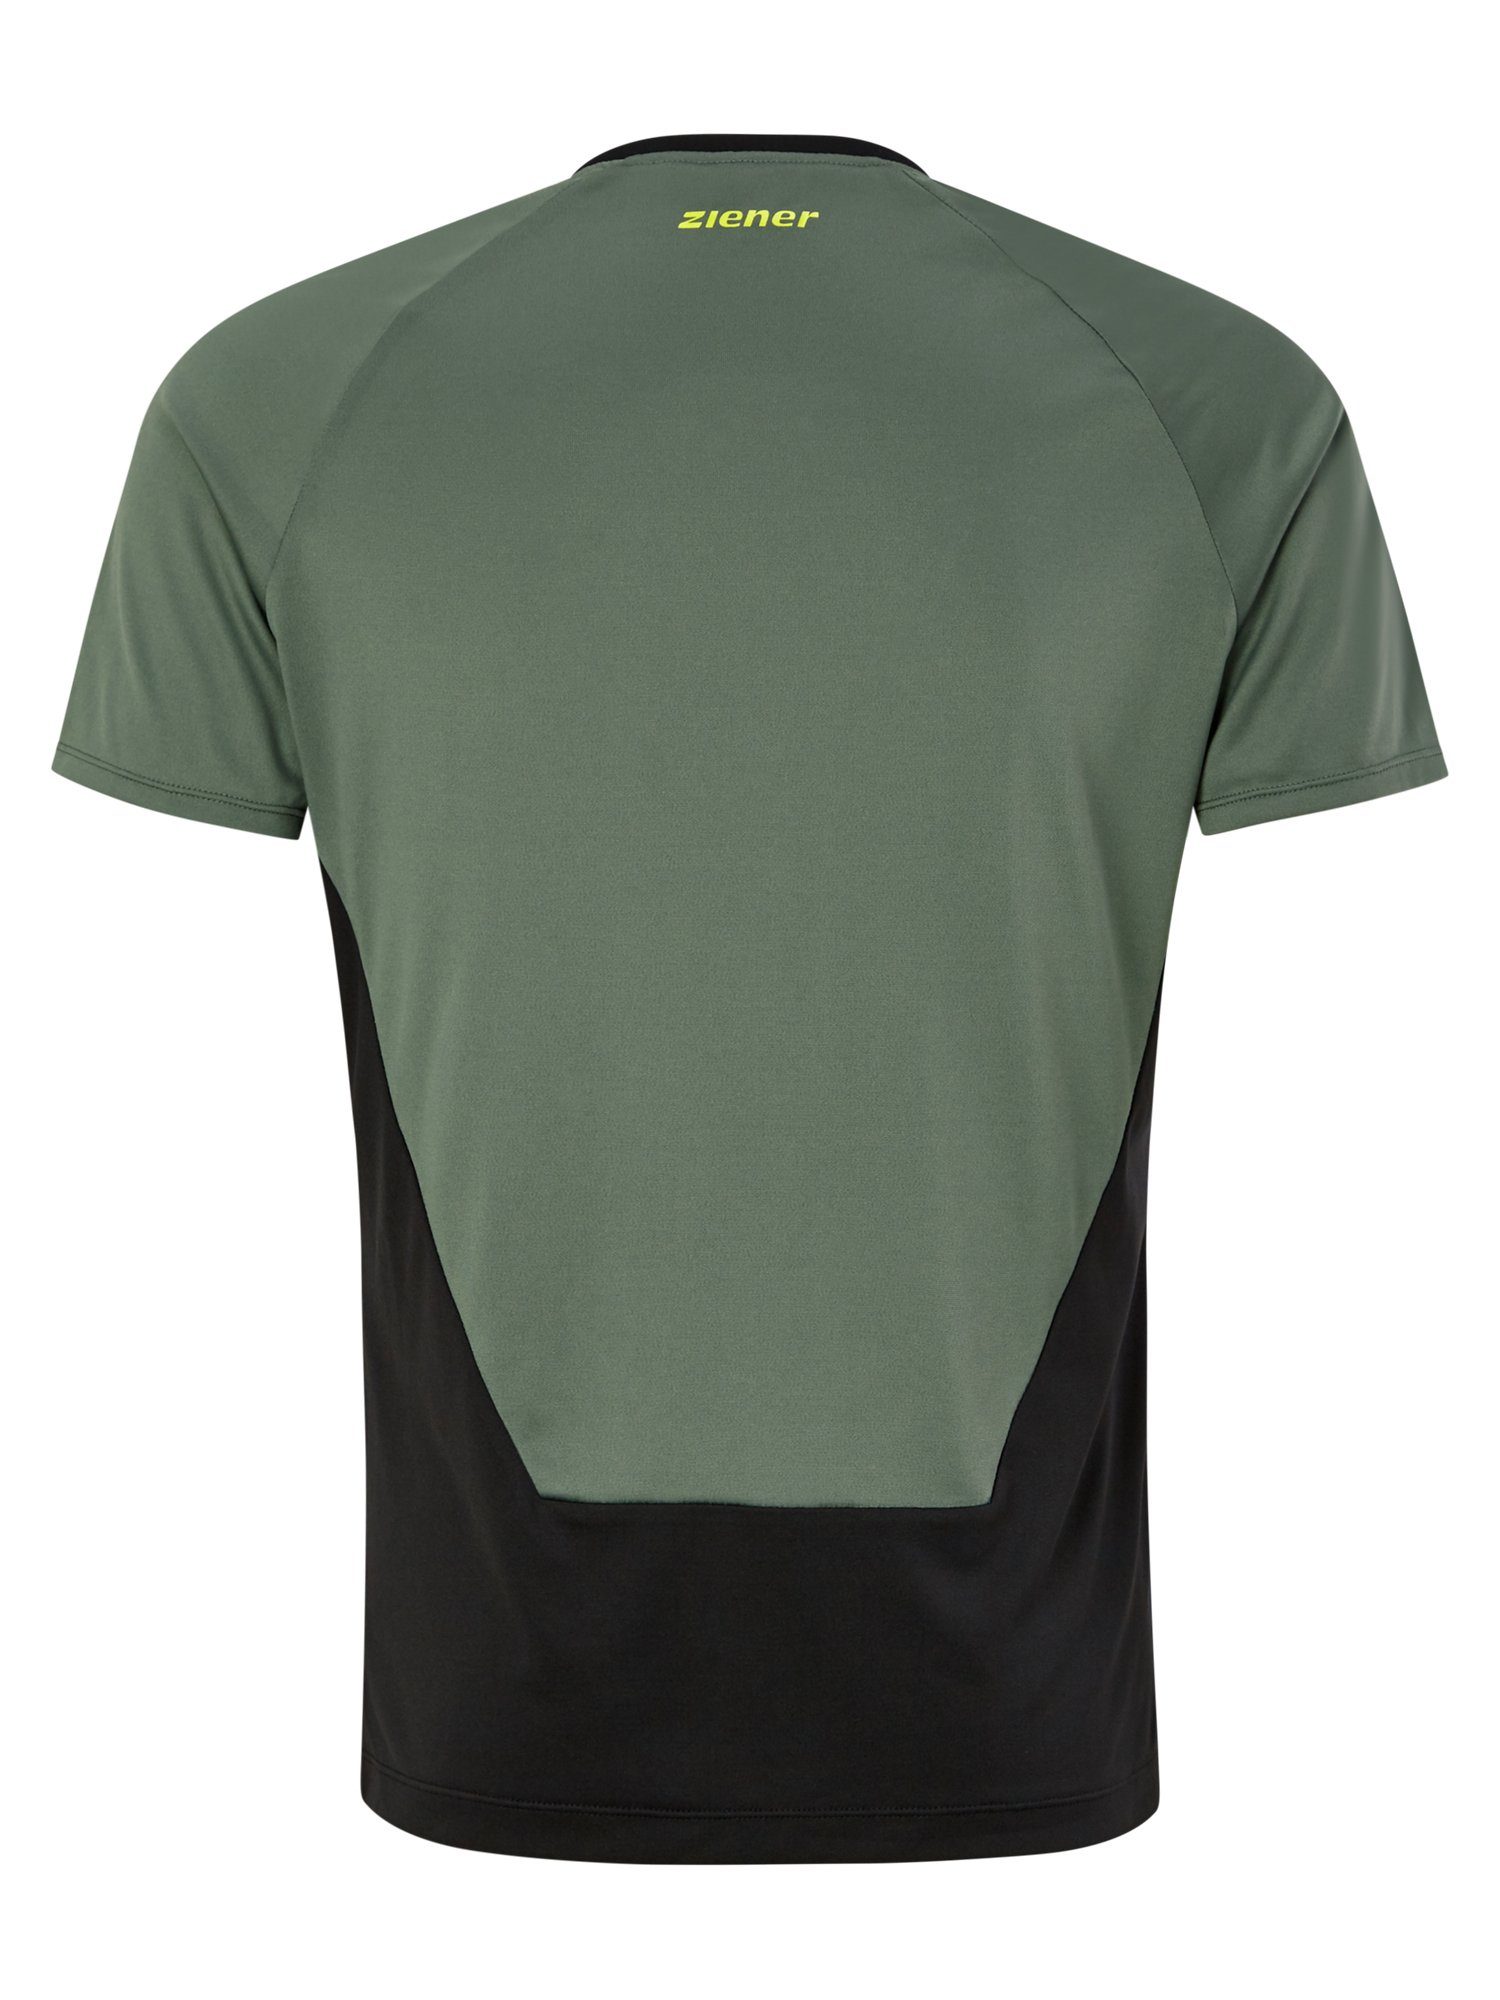 NABALIS olivgrün T-Shirt Ziener